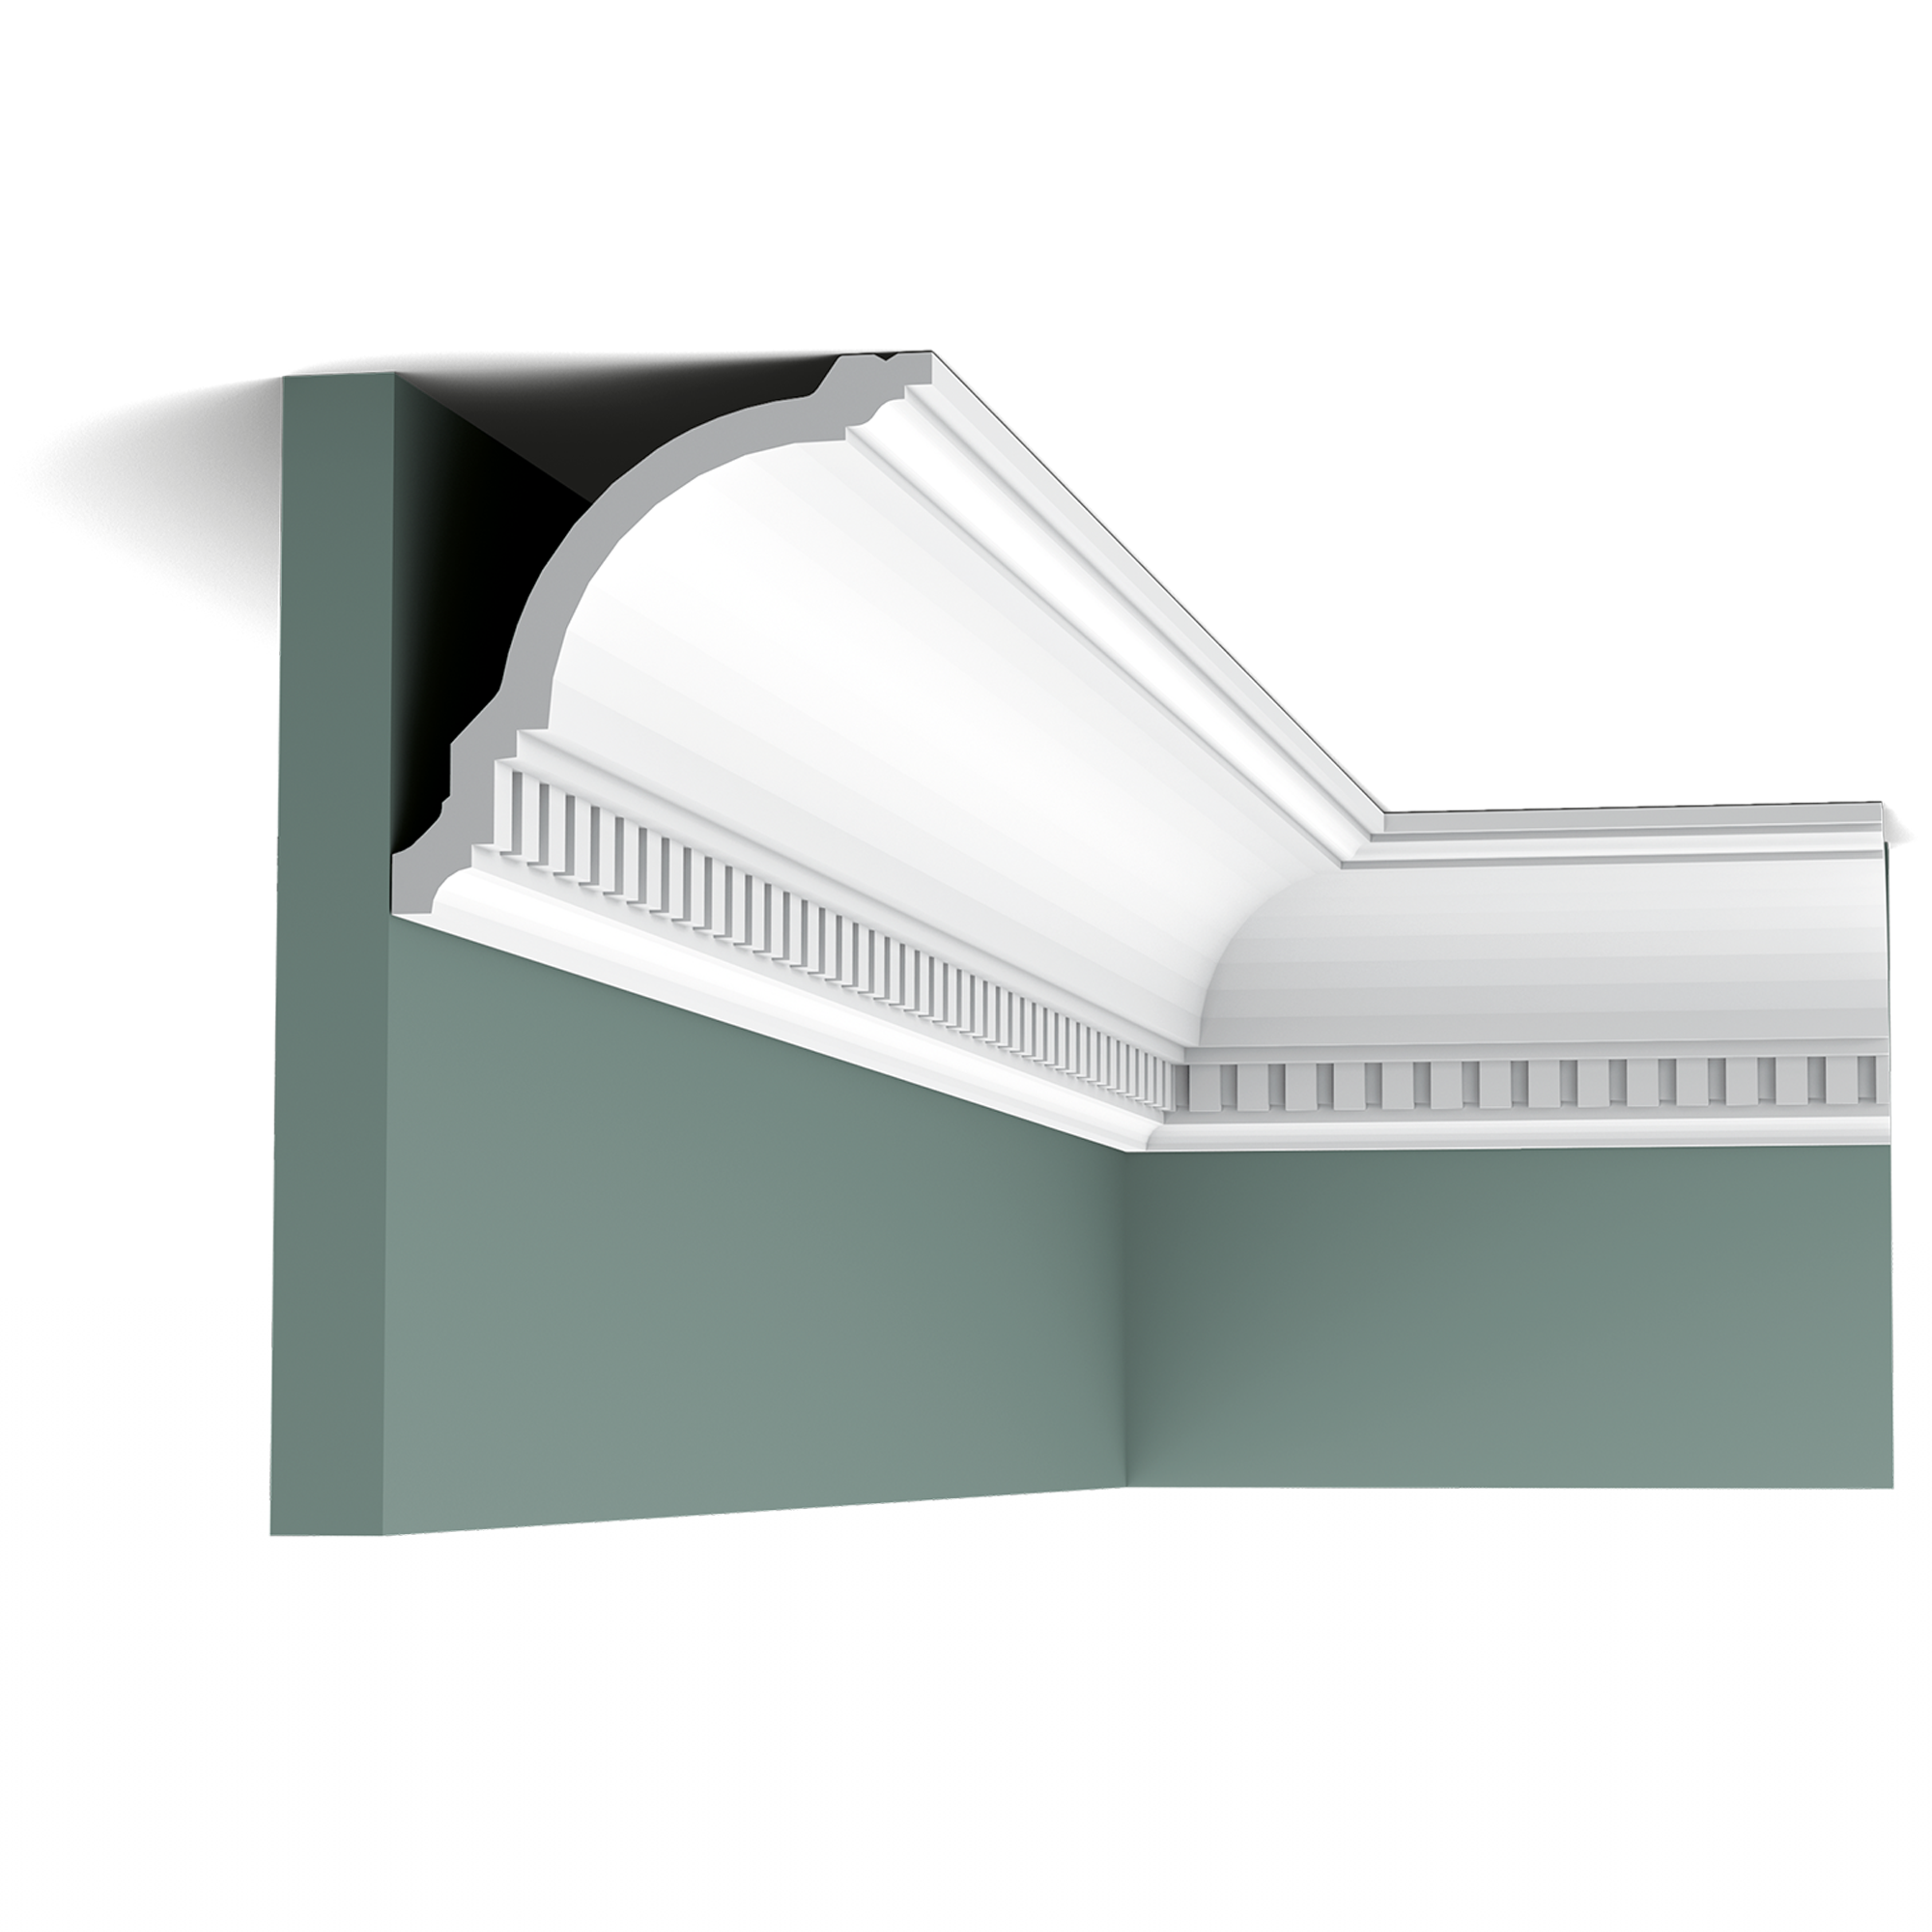 Галтели на натяжной потолок: виды потолочных плинтусов, установка, монтаж, какой плинтус выбрать, нужен ли плинтус для подвесного потолка, как установить